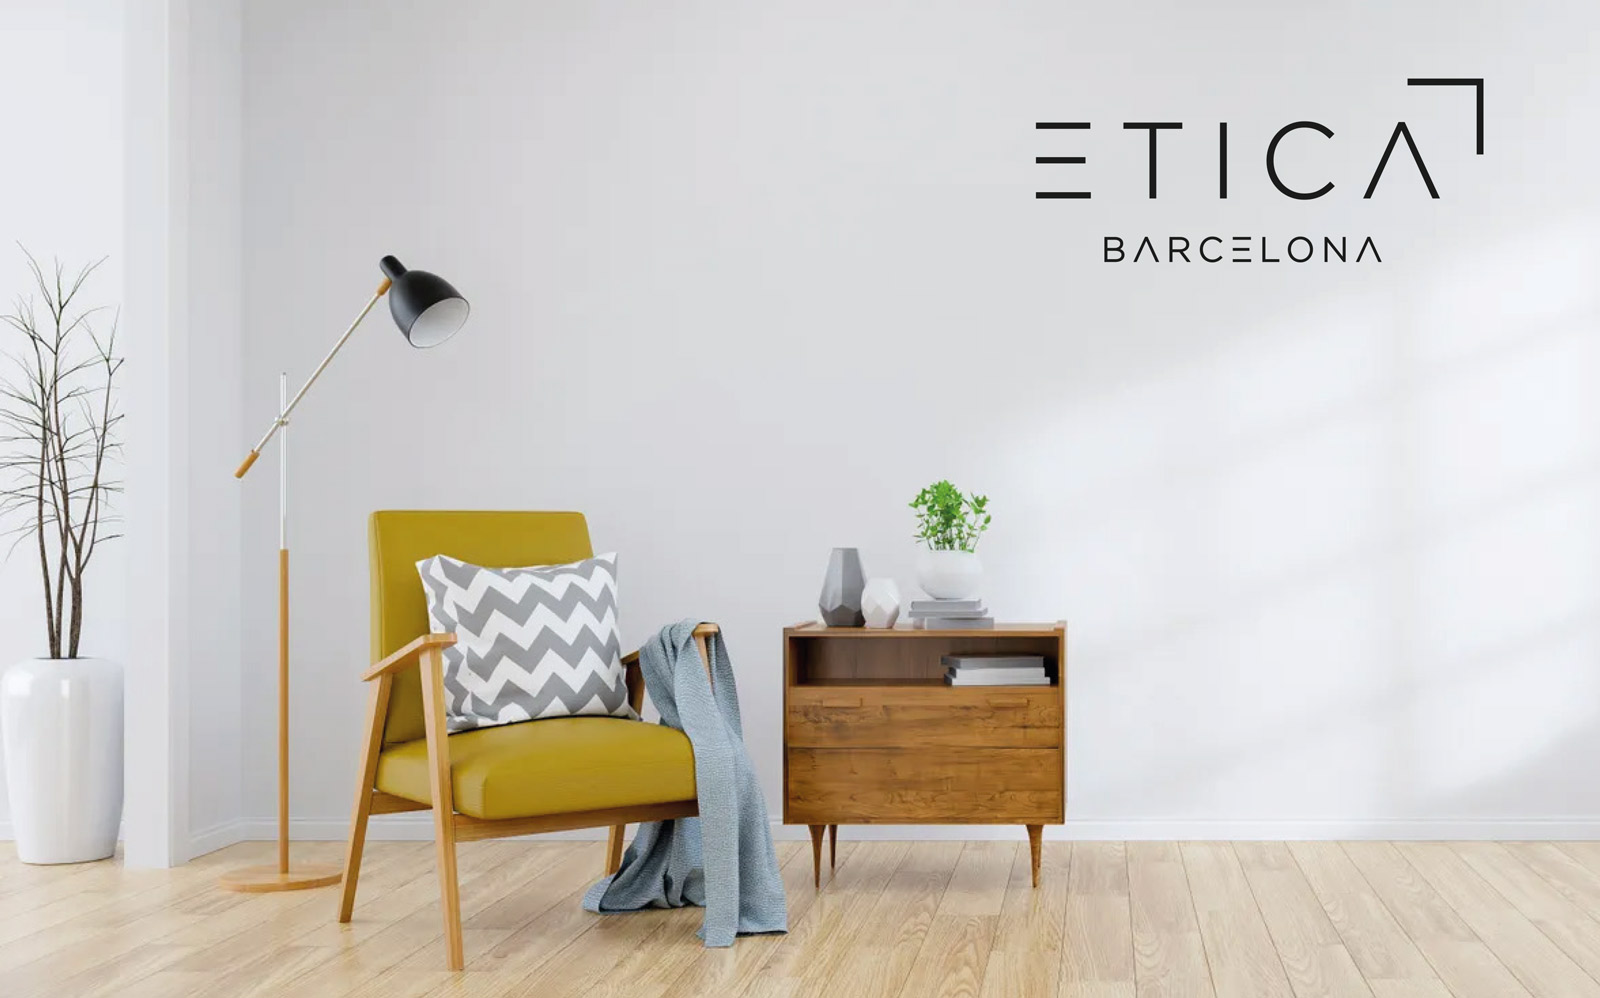 Diseño gráfico y creativo de restyling de logo y branding para agencia inmobiliaria ETICA BARCELONA